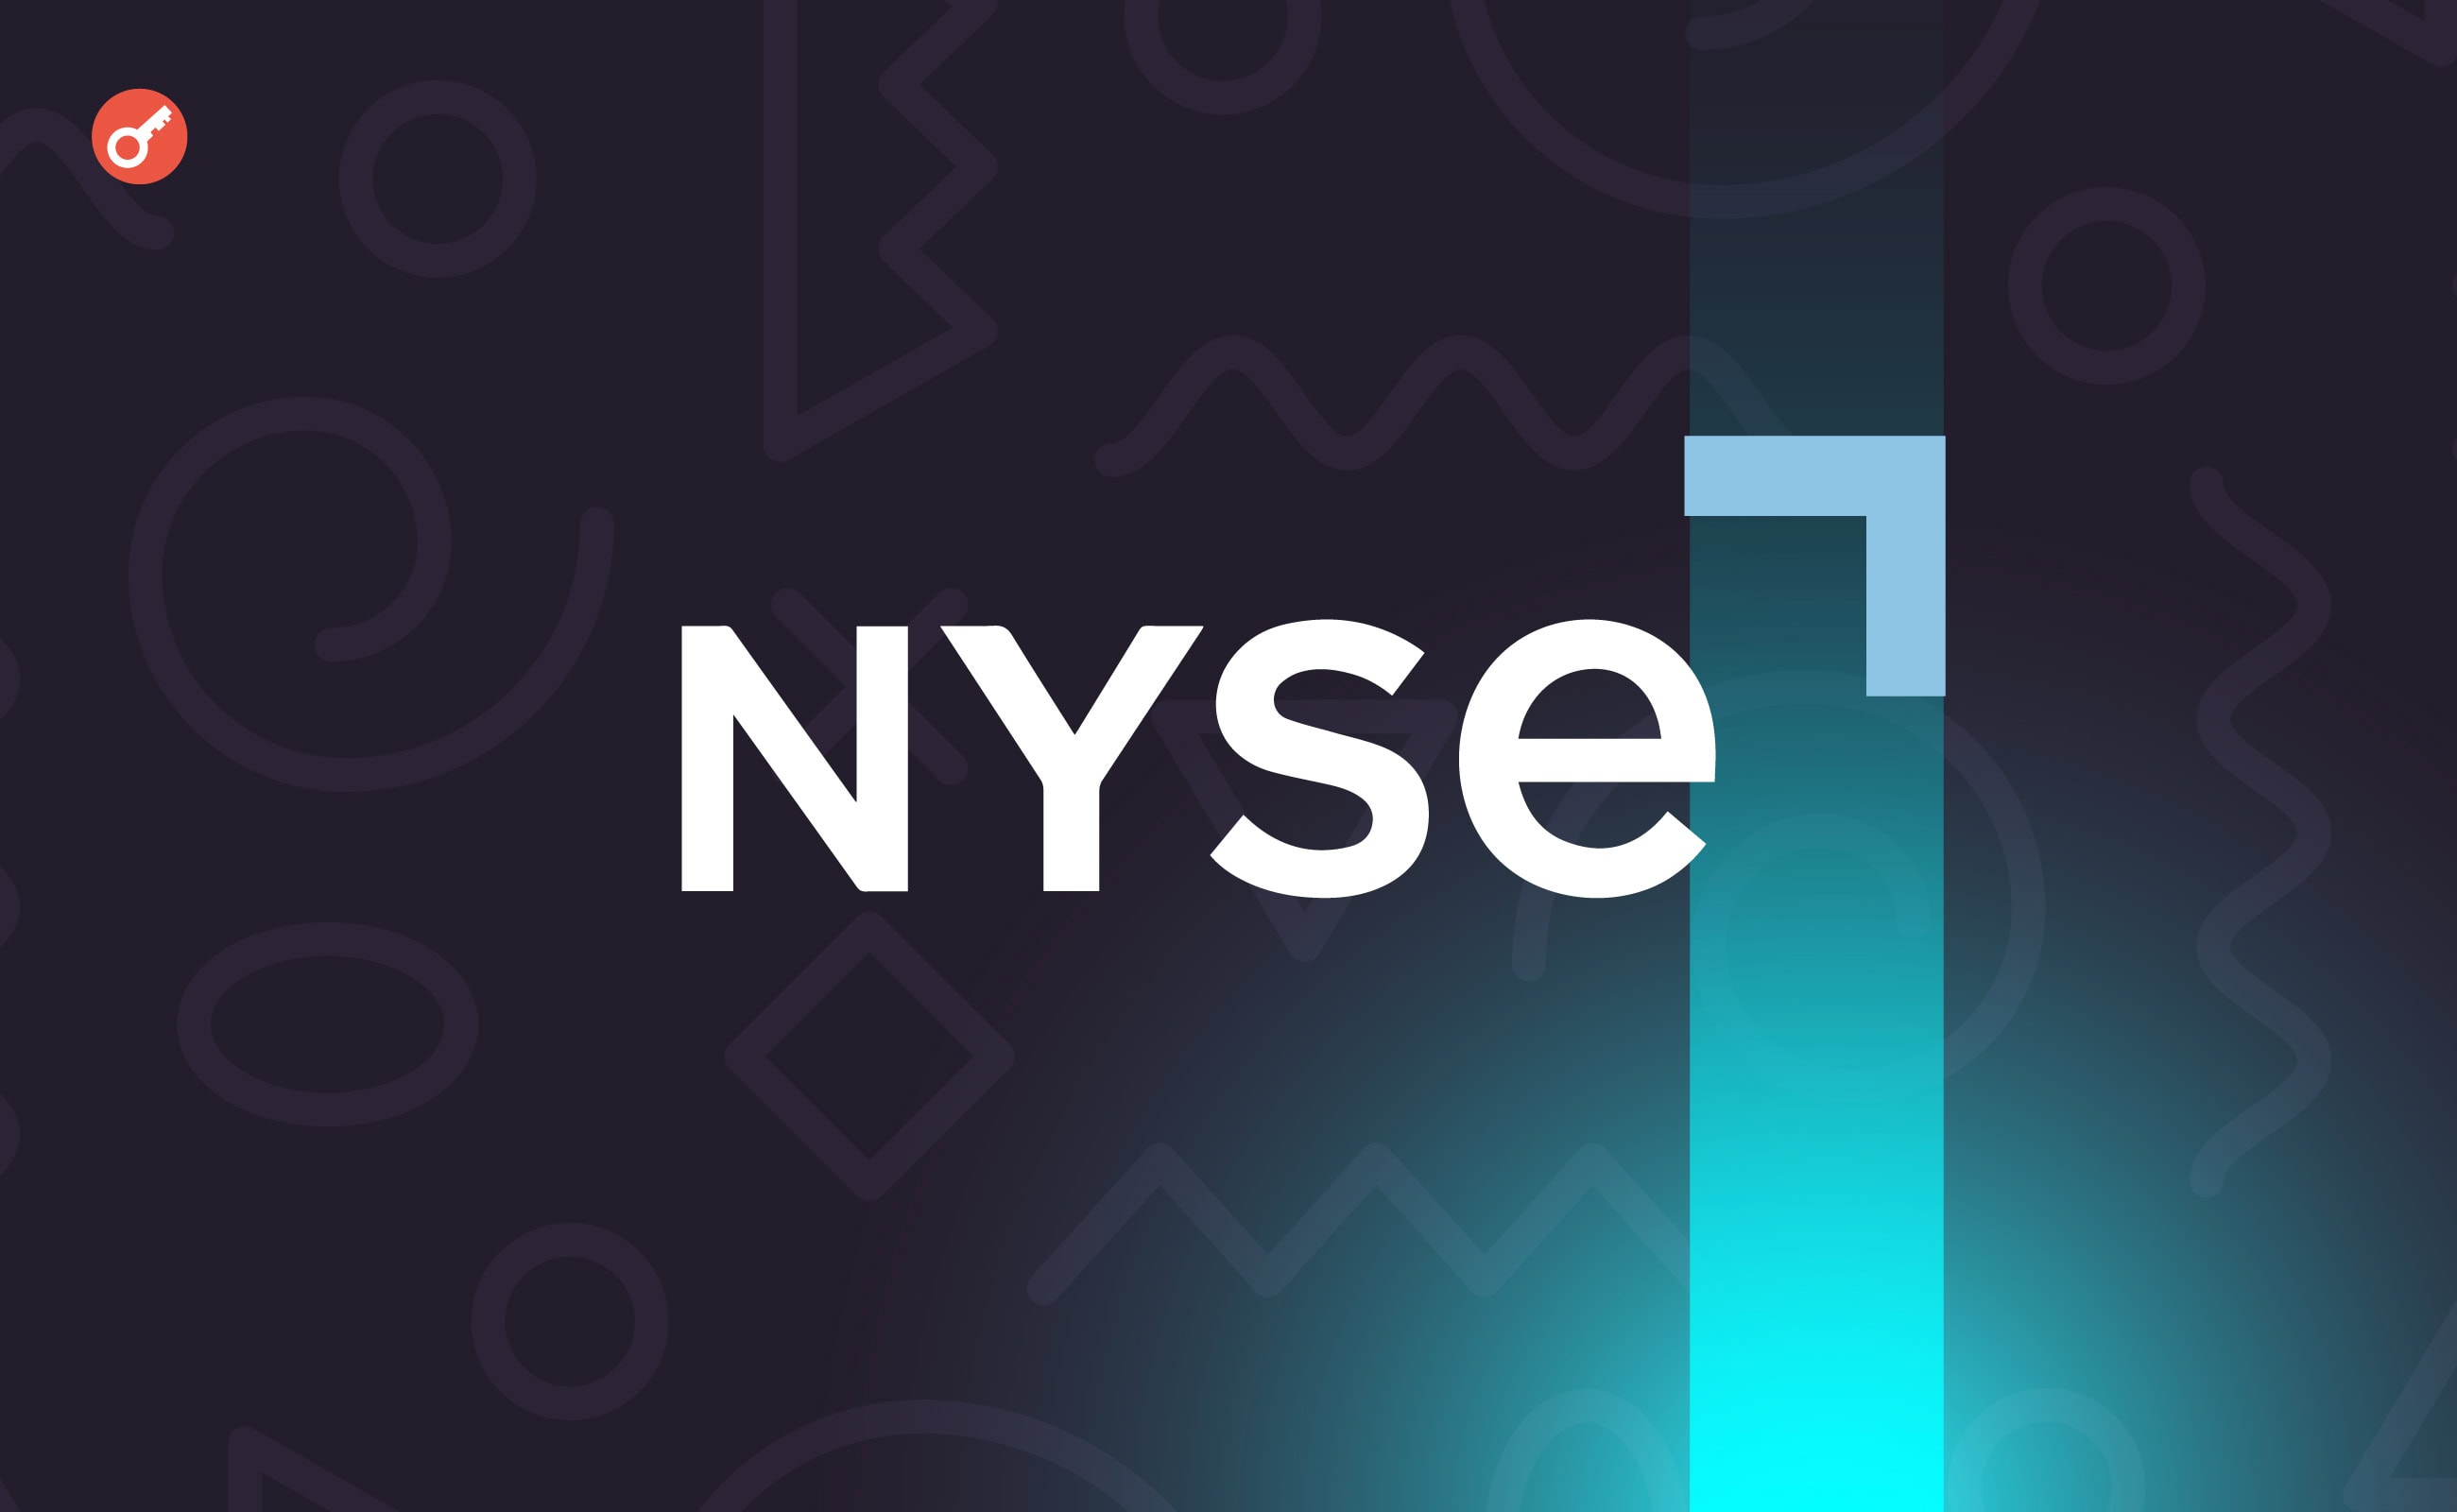 СМИ: NYSE изучает возможность круглосуточной торговли активами. Заглавный коллаж новости.